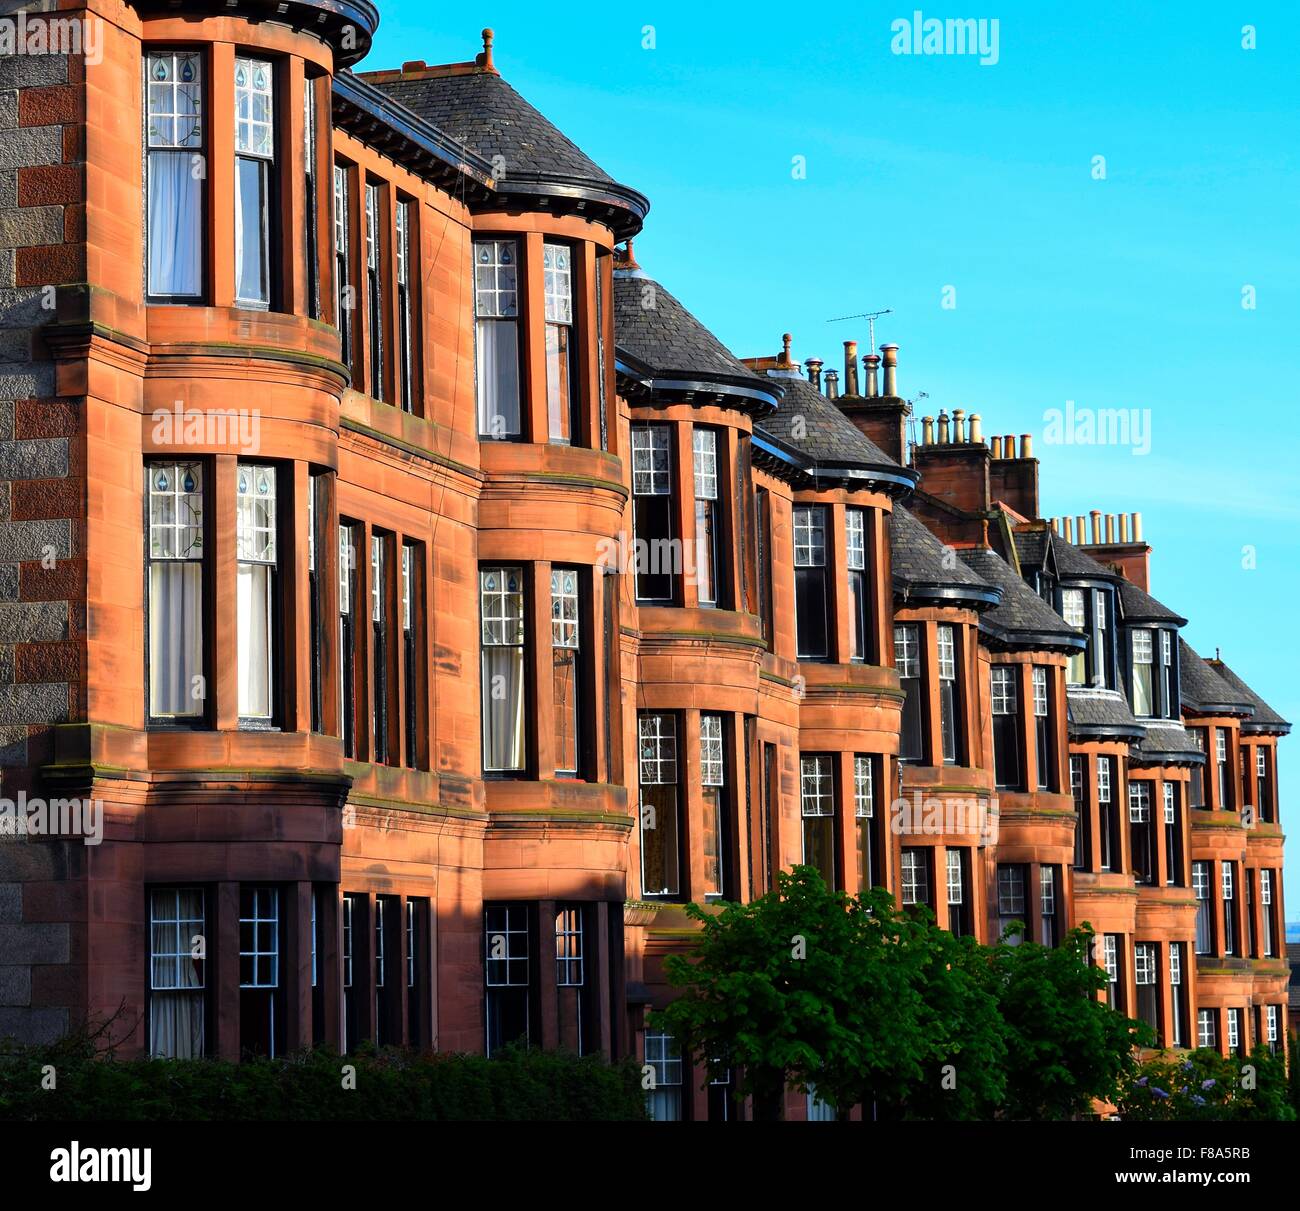 Fila de arenisca roja casón victoriano flats en dowanhill street en el West End de Glasgow mirando cuesta abajo en un día soleado Foto de stock